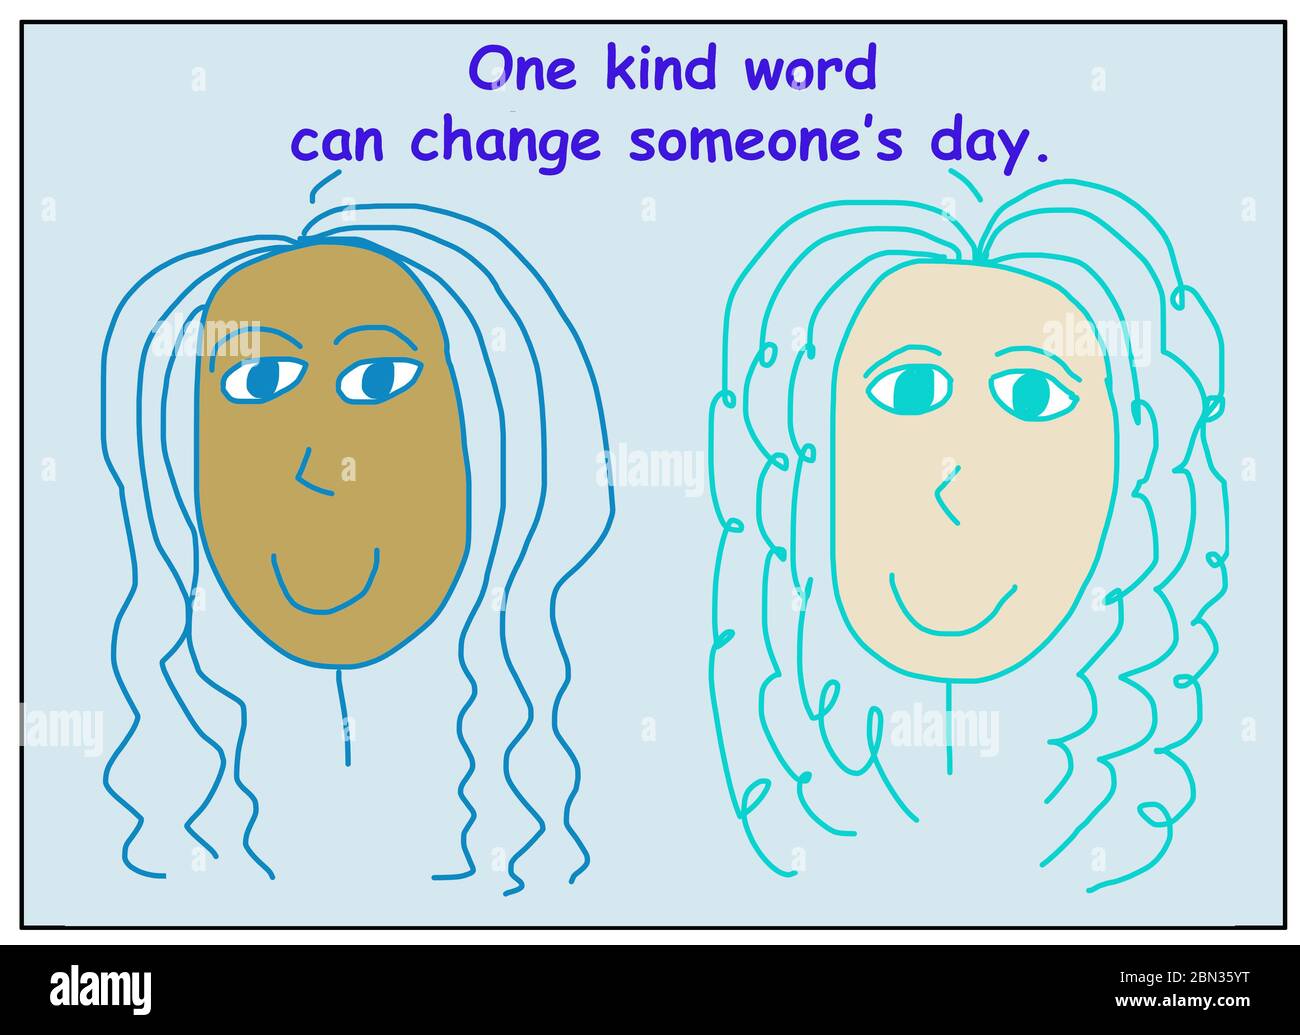 Cartoni animati a colori che mostrano due donne sorridenti ed etnicamente diverse che dicono una parola gentile può cambiare la giornata di qualcuno. Foto Stock